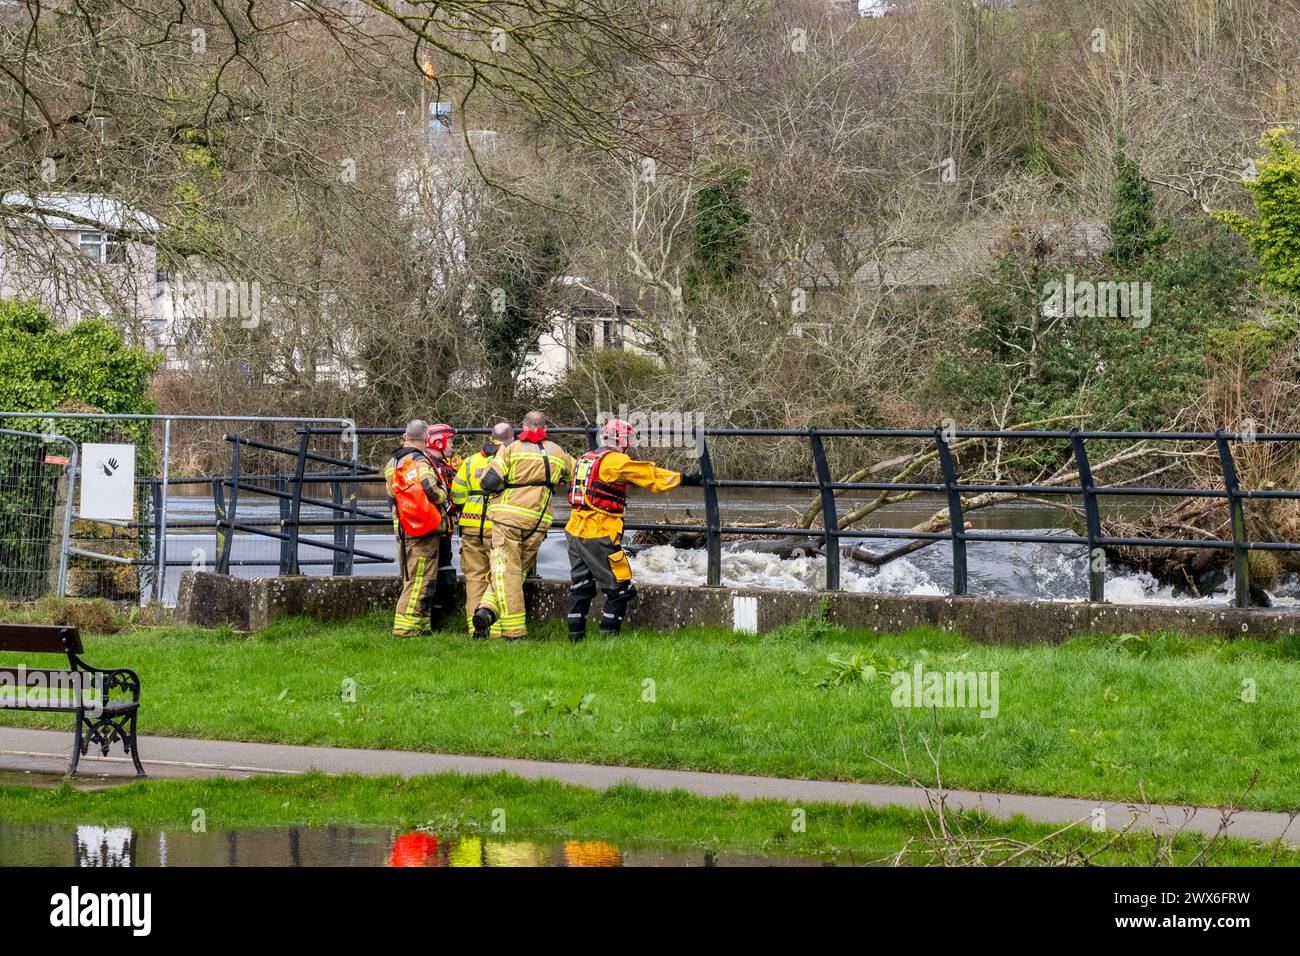 Les pompiers fouillent la rivière Lee après les rapports d'une personne dans l'eau, Cork, Irlande. Banque D'Images